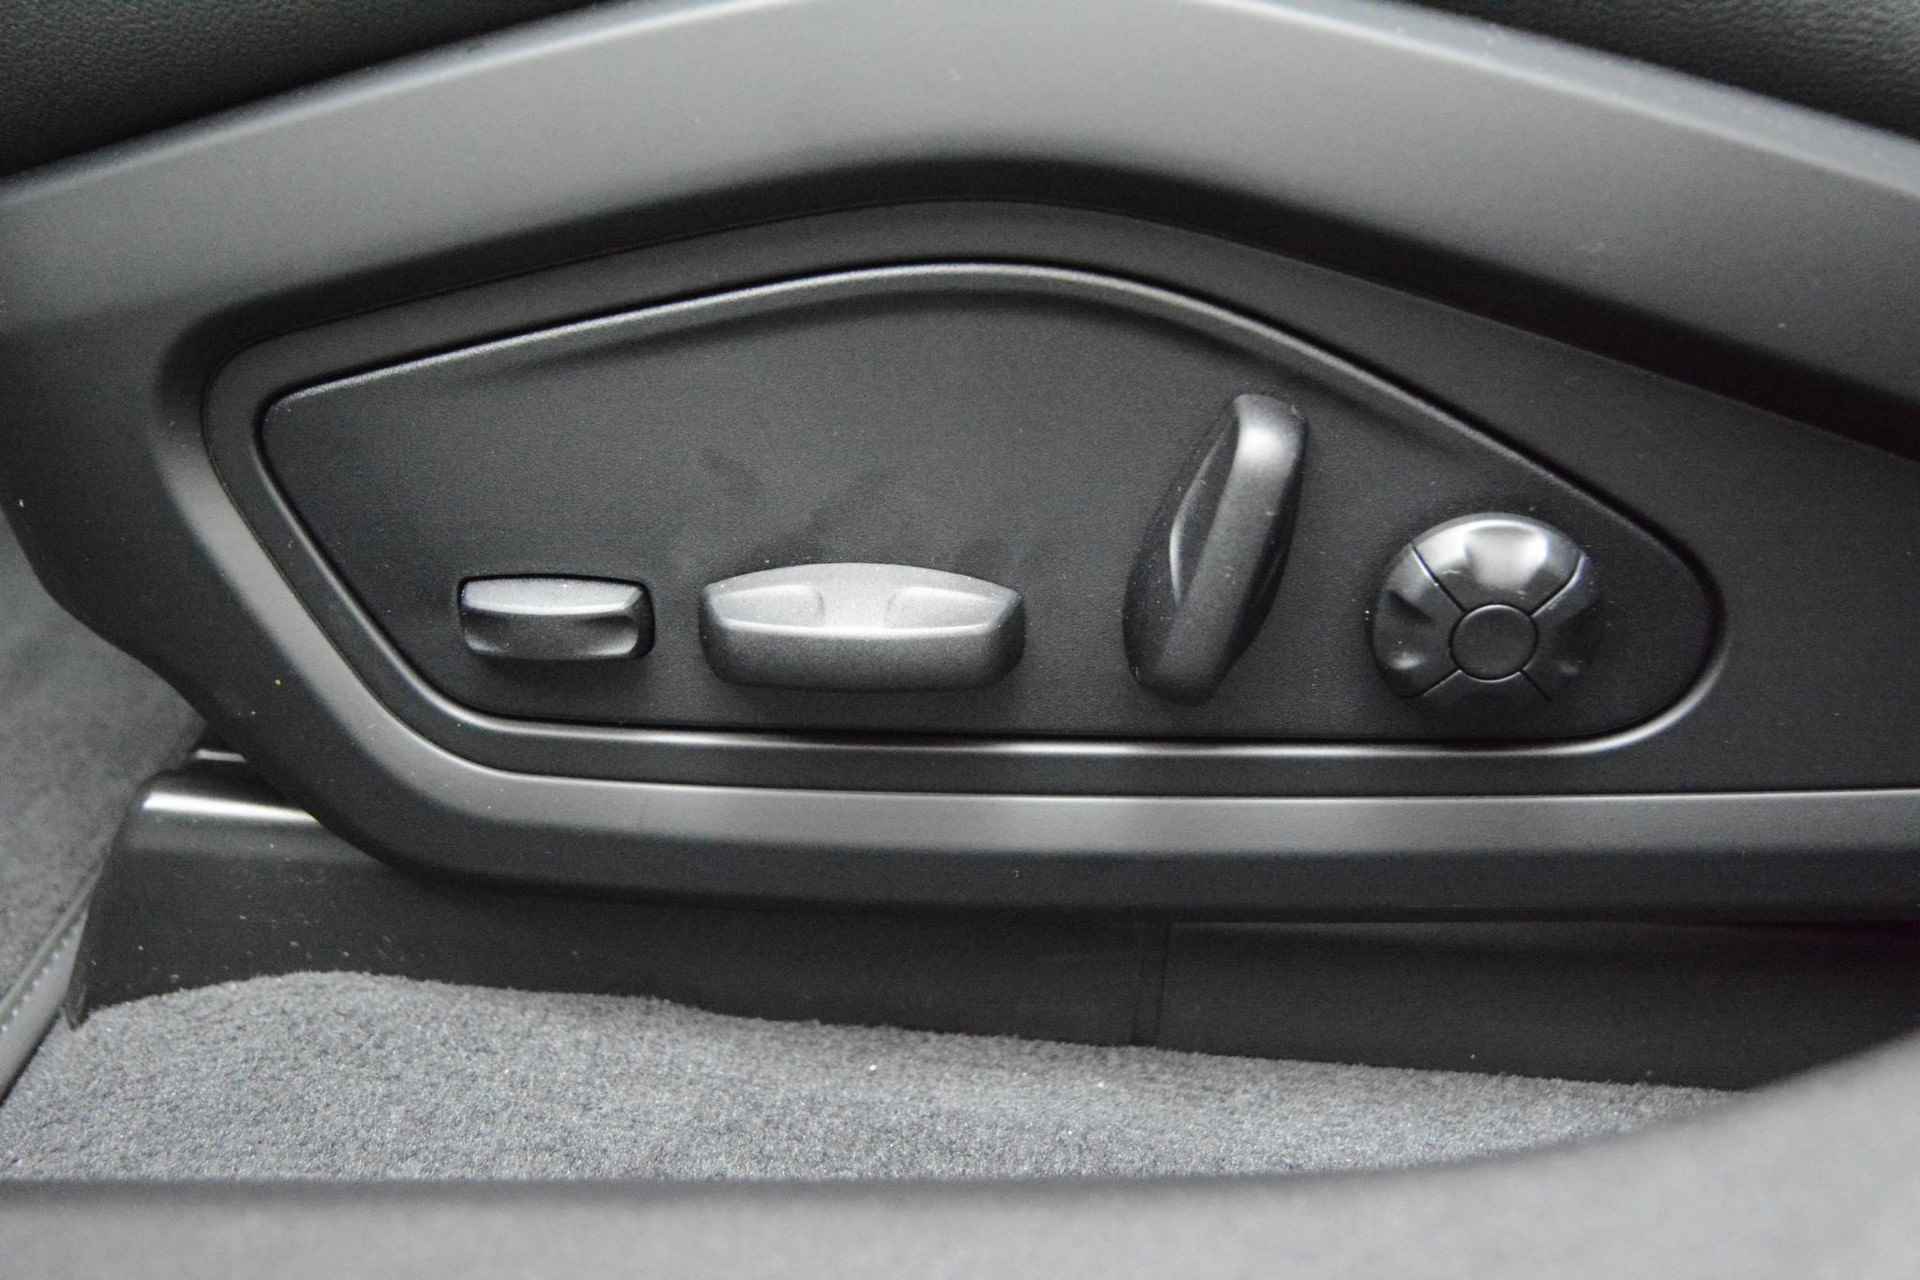 Audi e-tron GT GT Competition 93 kWh 476 PK | Nieuw | NU VAN € 143.900,00 VOOR € 123.900,00!!!! | UNIEKE KLEUR TIEFGRUN ENIGE IN NL!!! | Navigatie | Maxtrix-Laser koplampen | 360 camera | Autonome parkeerfunctie | Dynamische vierwielbesturing | Dodehoek detectie | Glazen panoramadak | Head-up display | Dynamiekpakket plus | Audi virtual cockpit plus | Stoelverwarming voor en achter | Lichtpakket plus ambient light | Optiekpakket zwart plus - 13/30